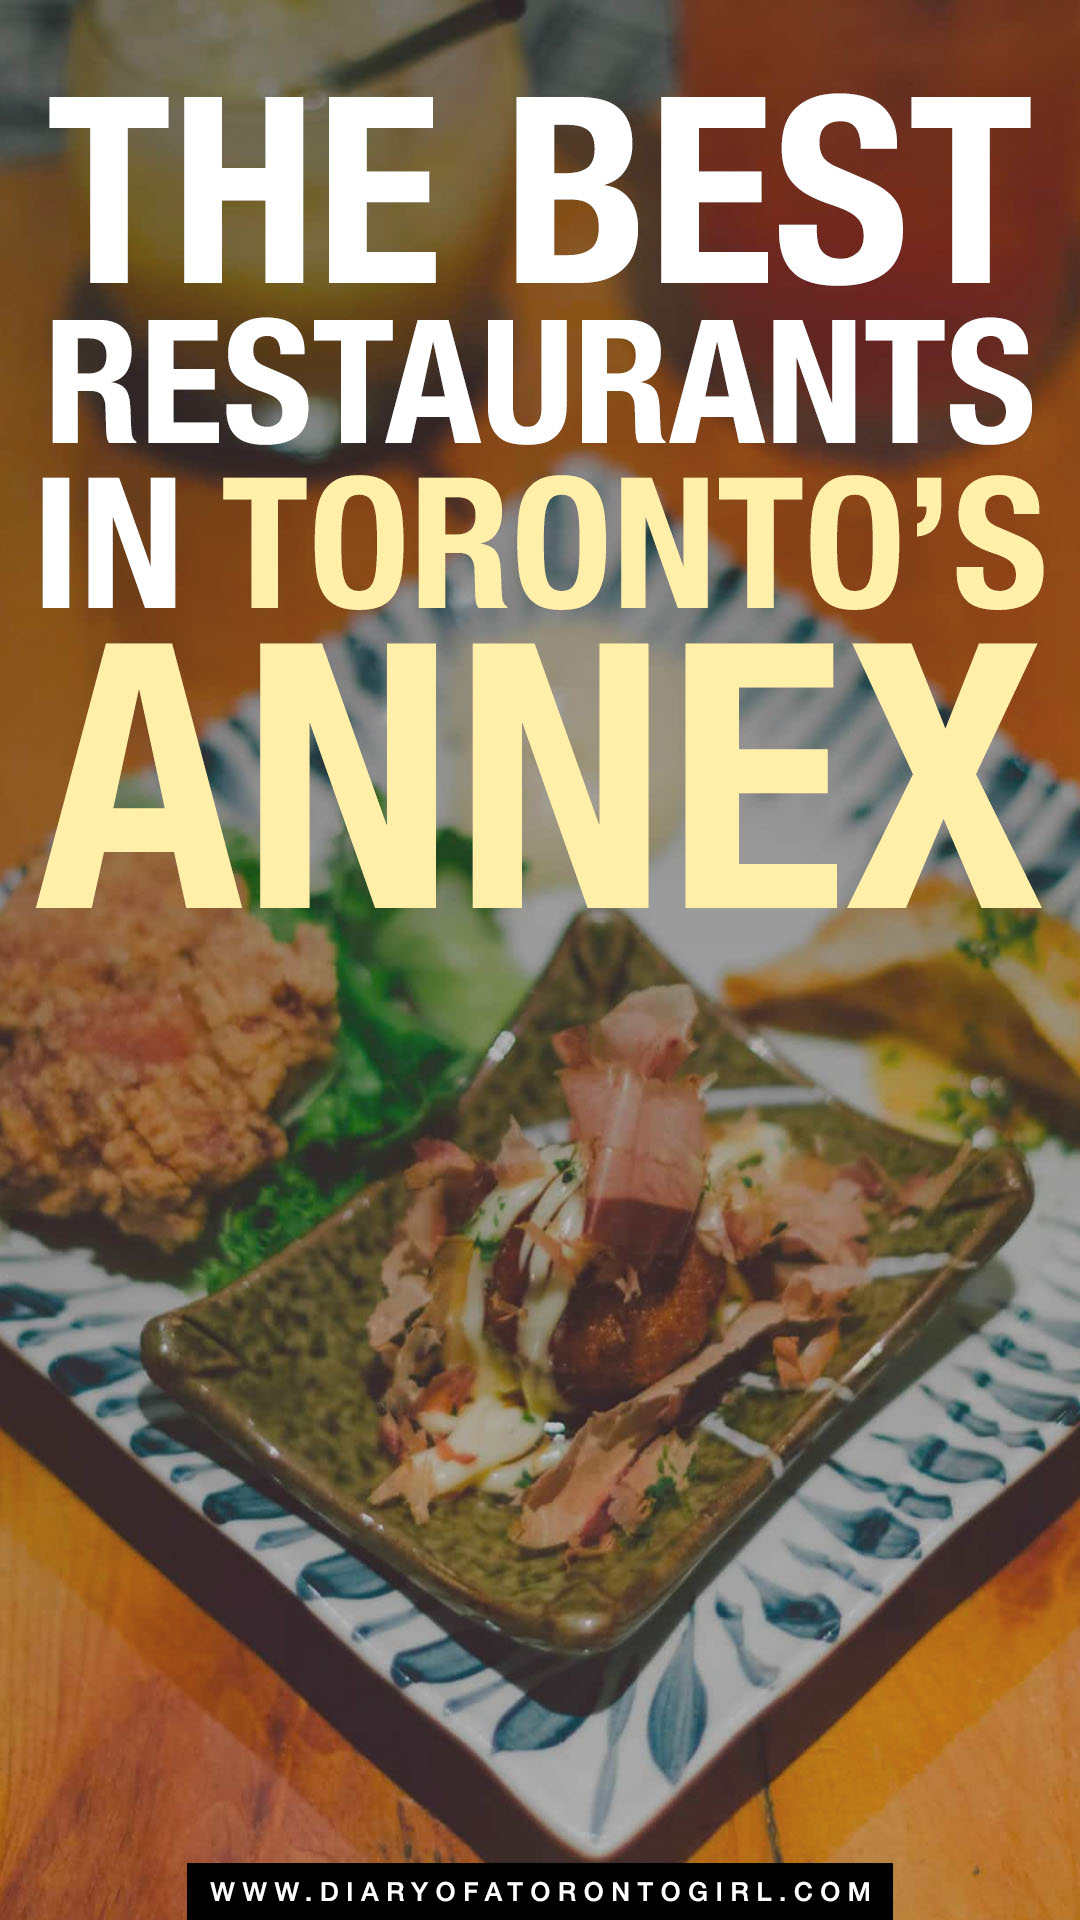 Best restaurants in Toronto's Annex